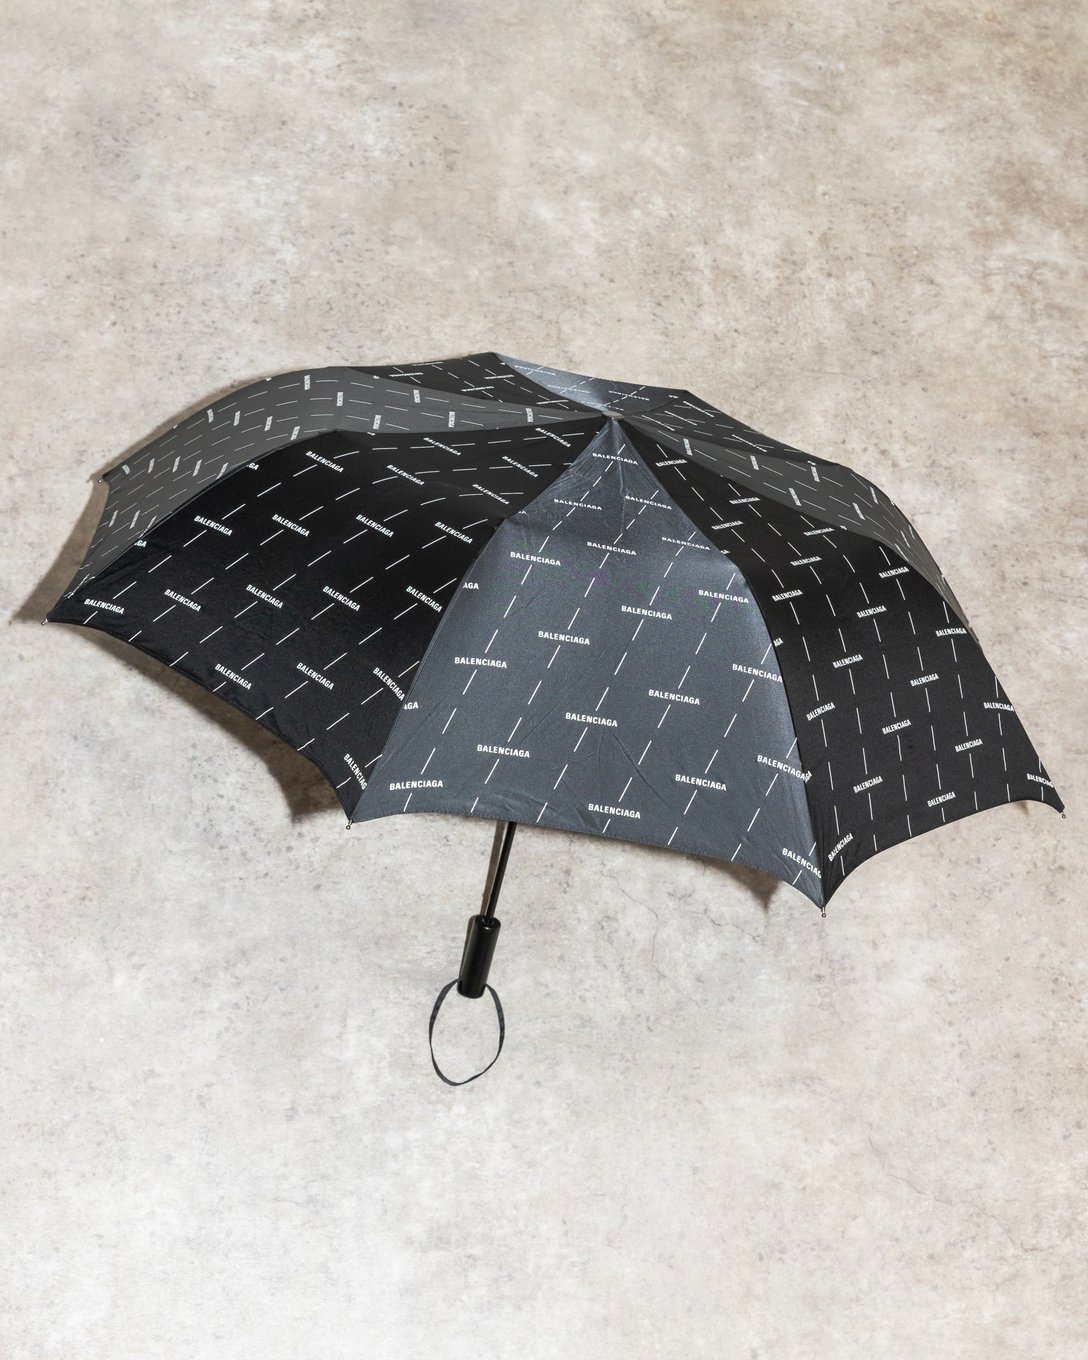 「バレンシアガ」の折り畳み傘